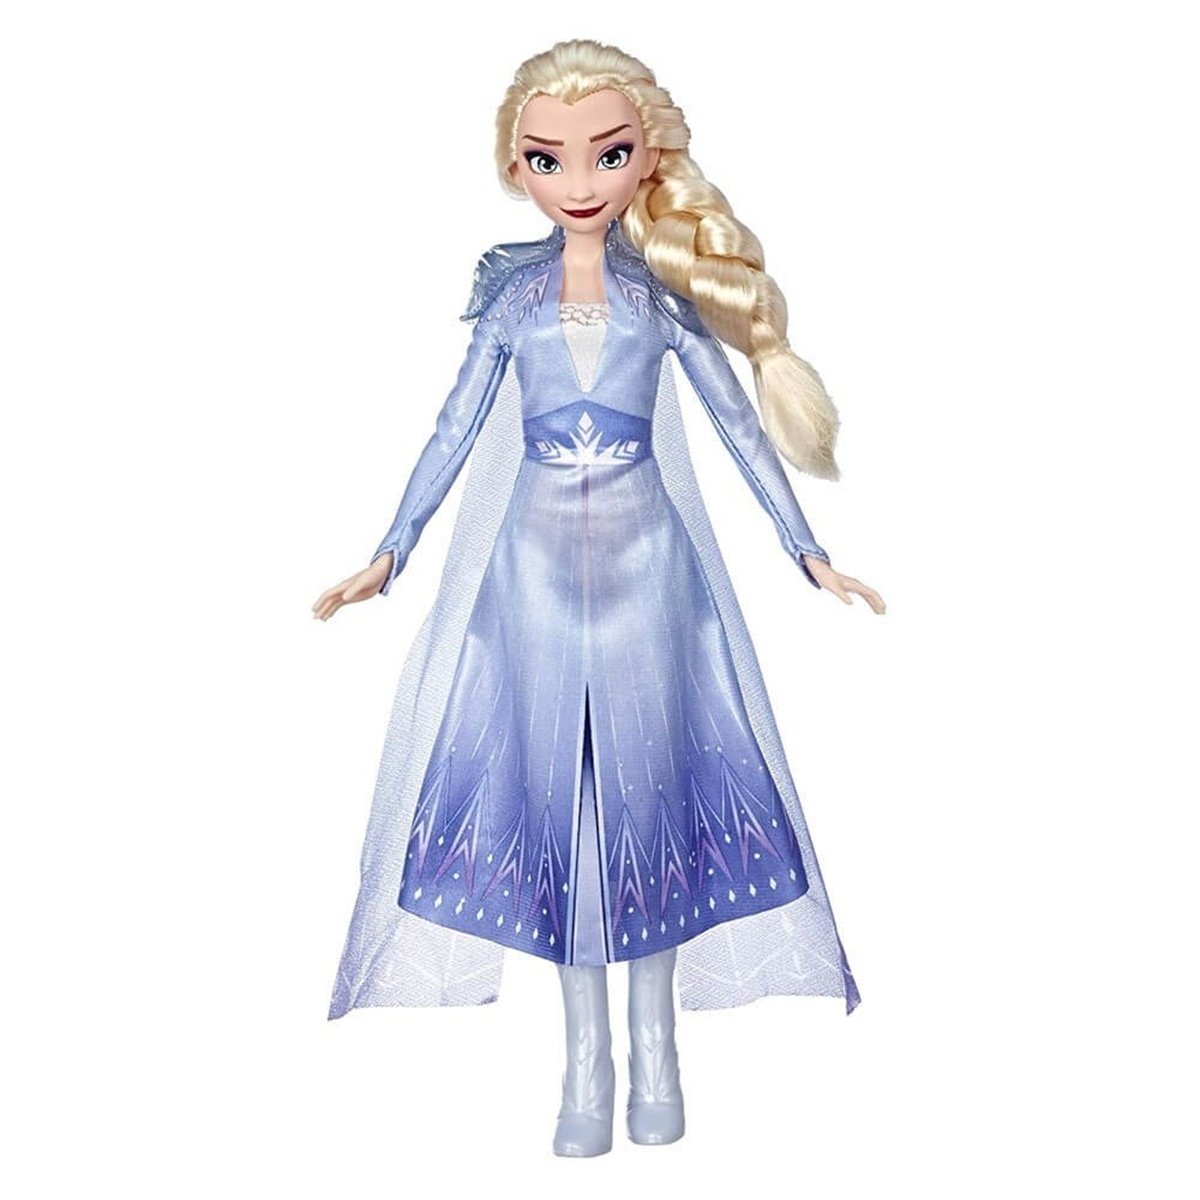 Hasbro Disney Frozen 2 Elsa E8170